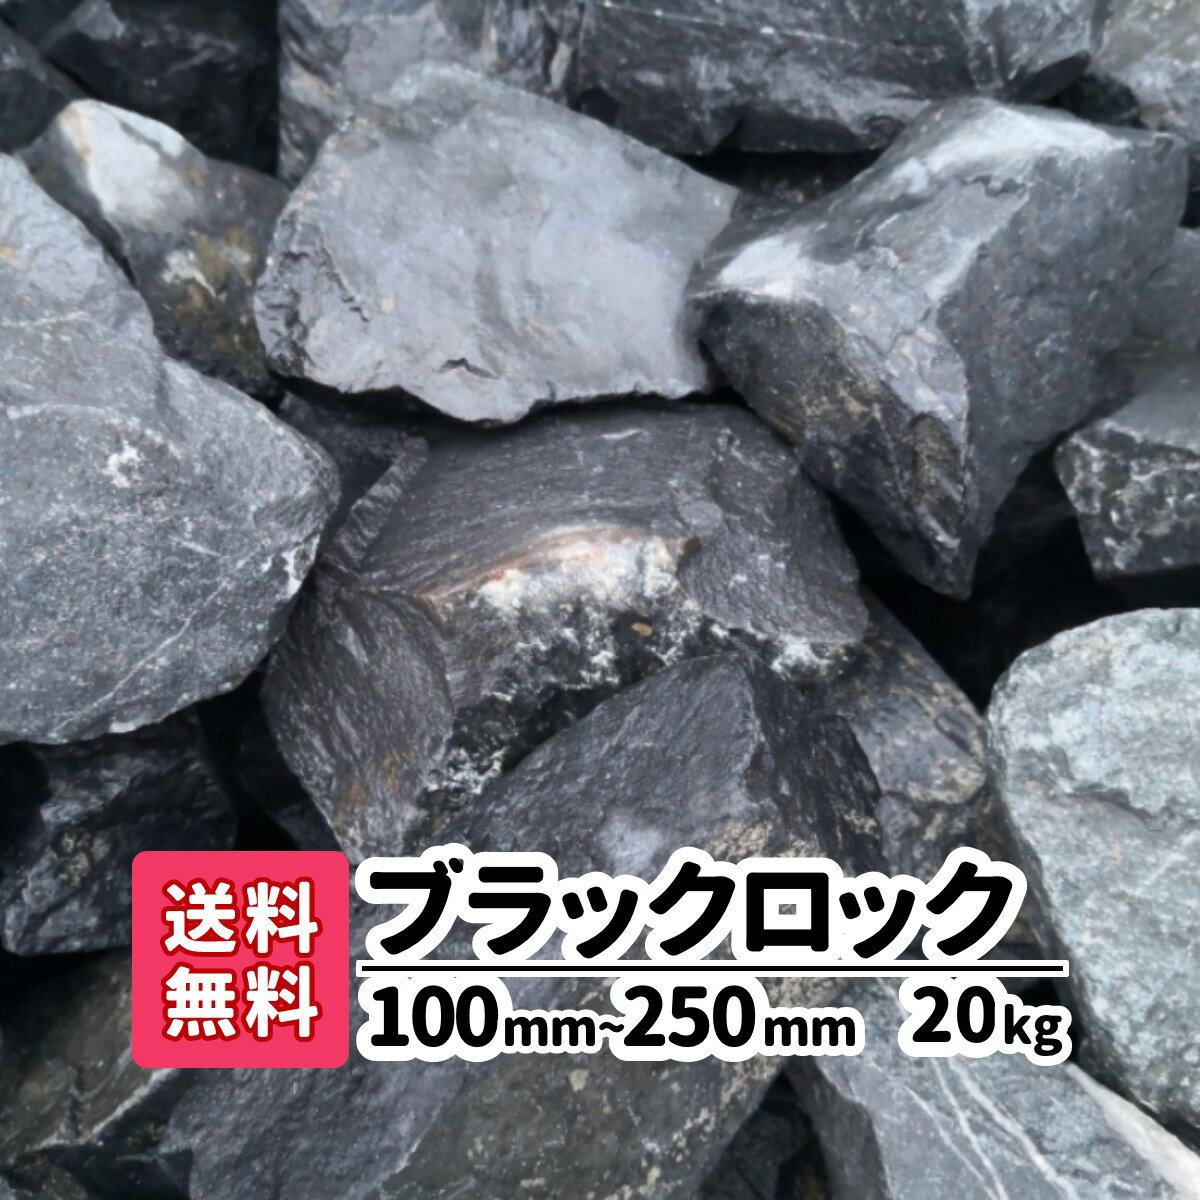 【送料無料】 20kg ブラックロック 100mm 〜250mm ロックガーデン 割栗石 砂利 ガー ...